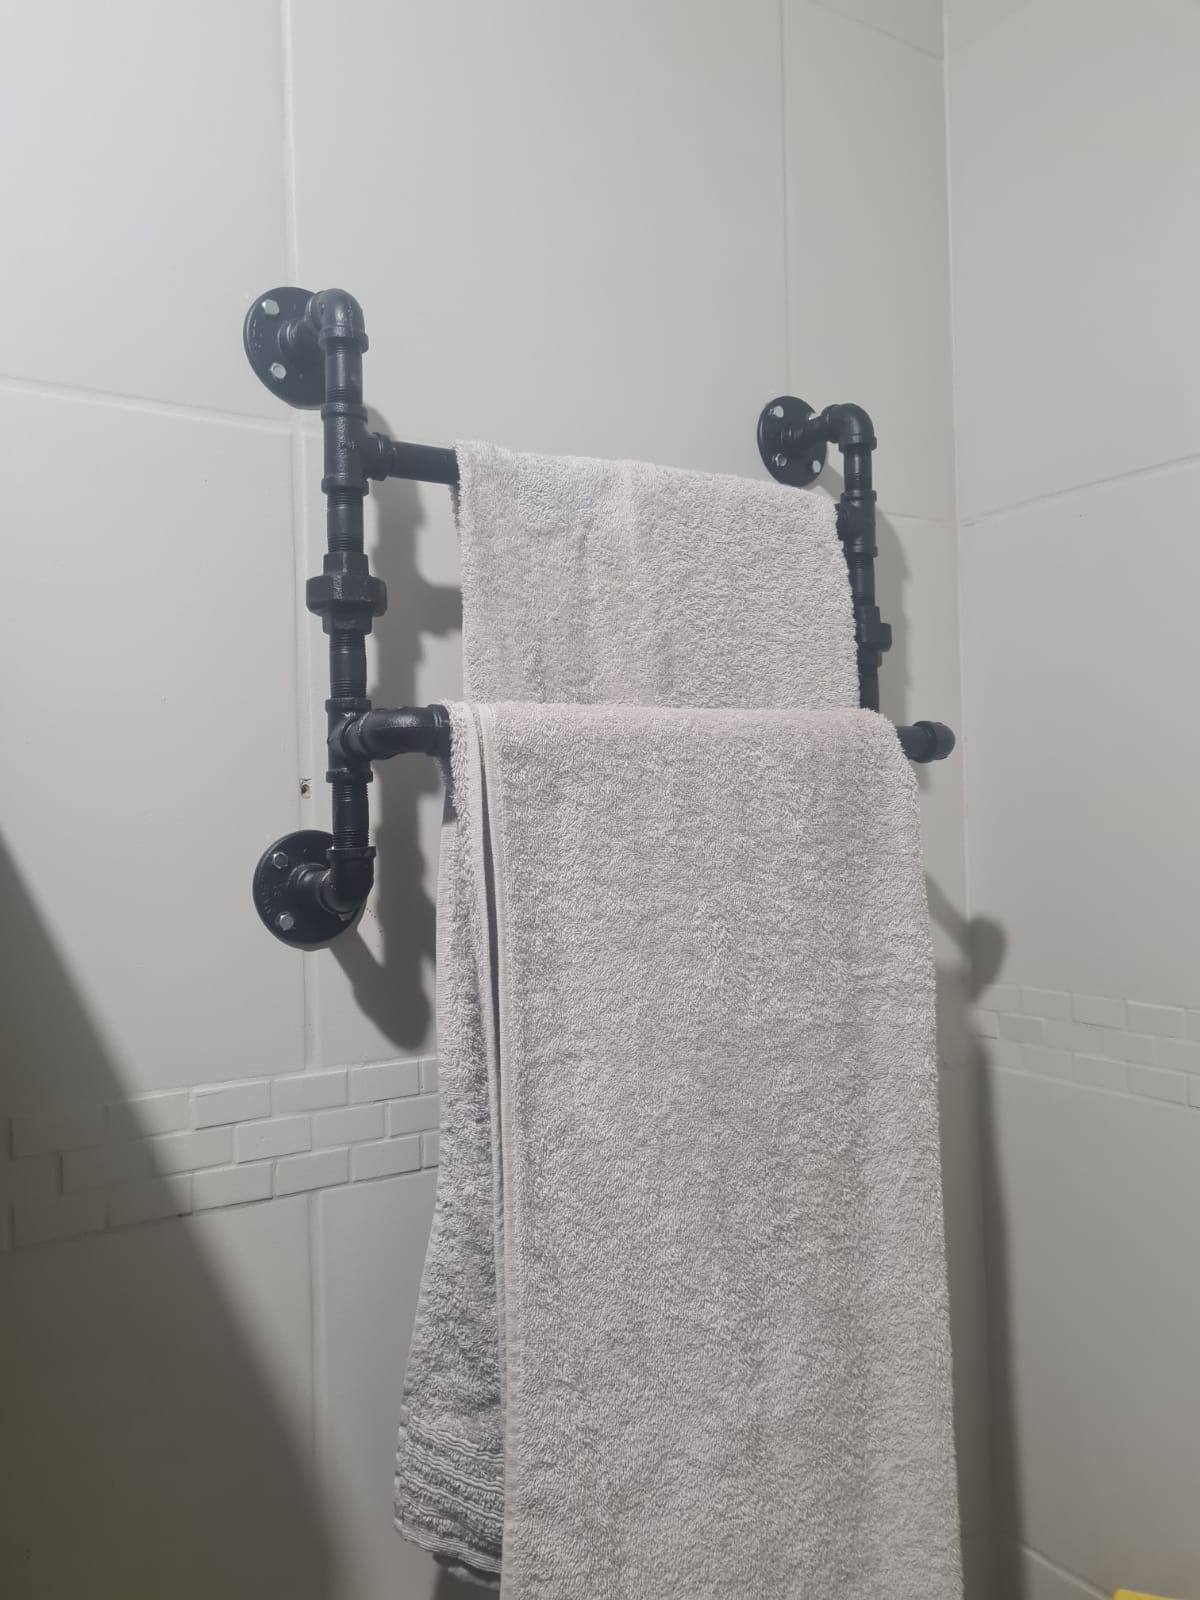 DIY Industrial Towel Rack Kit